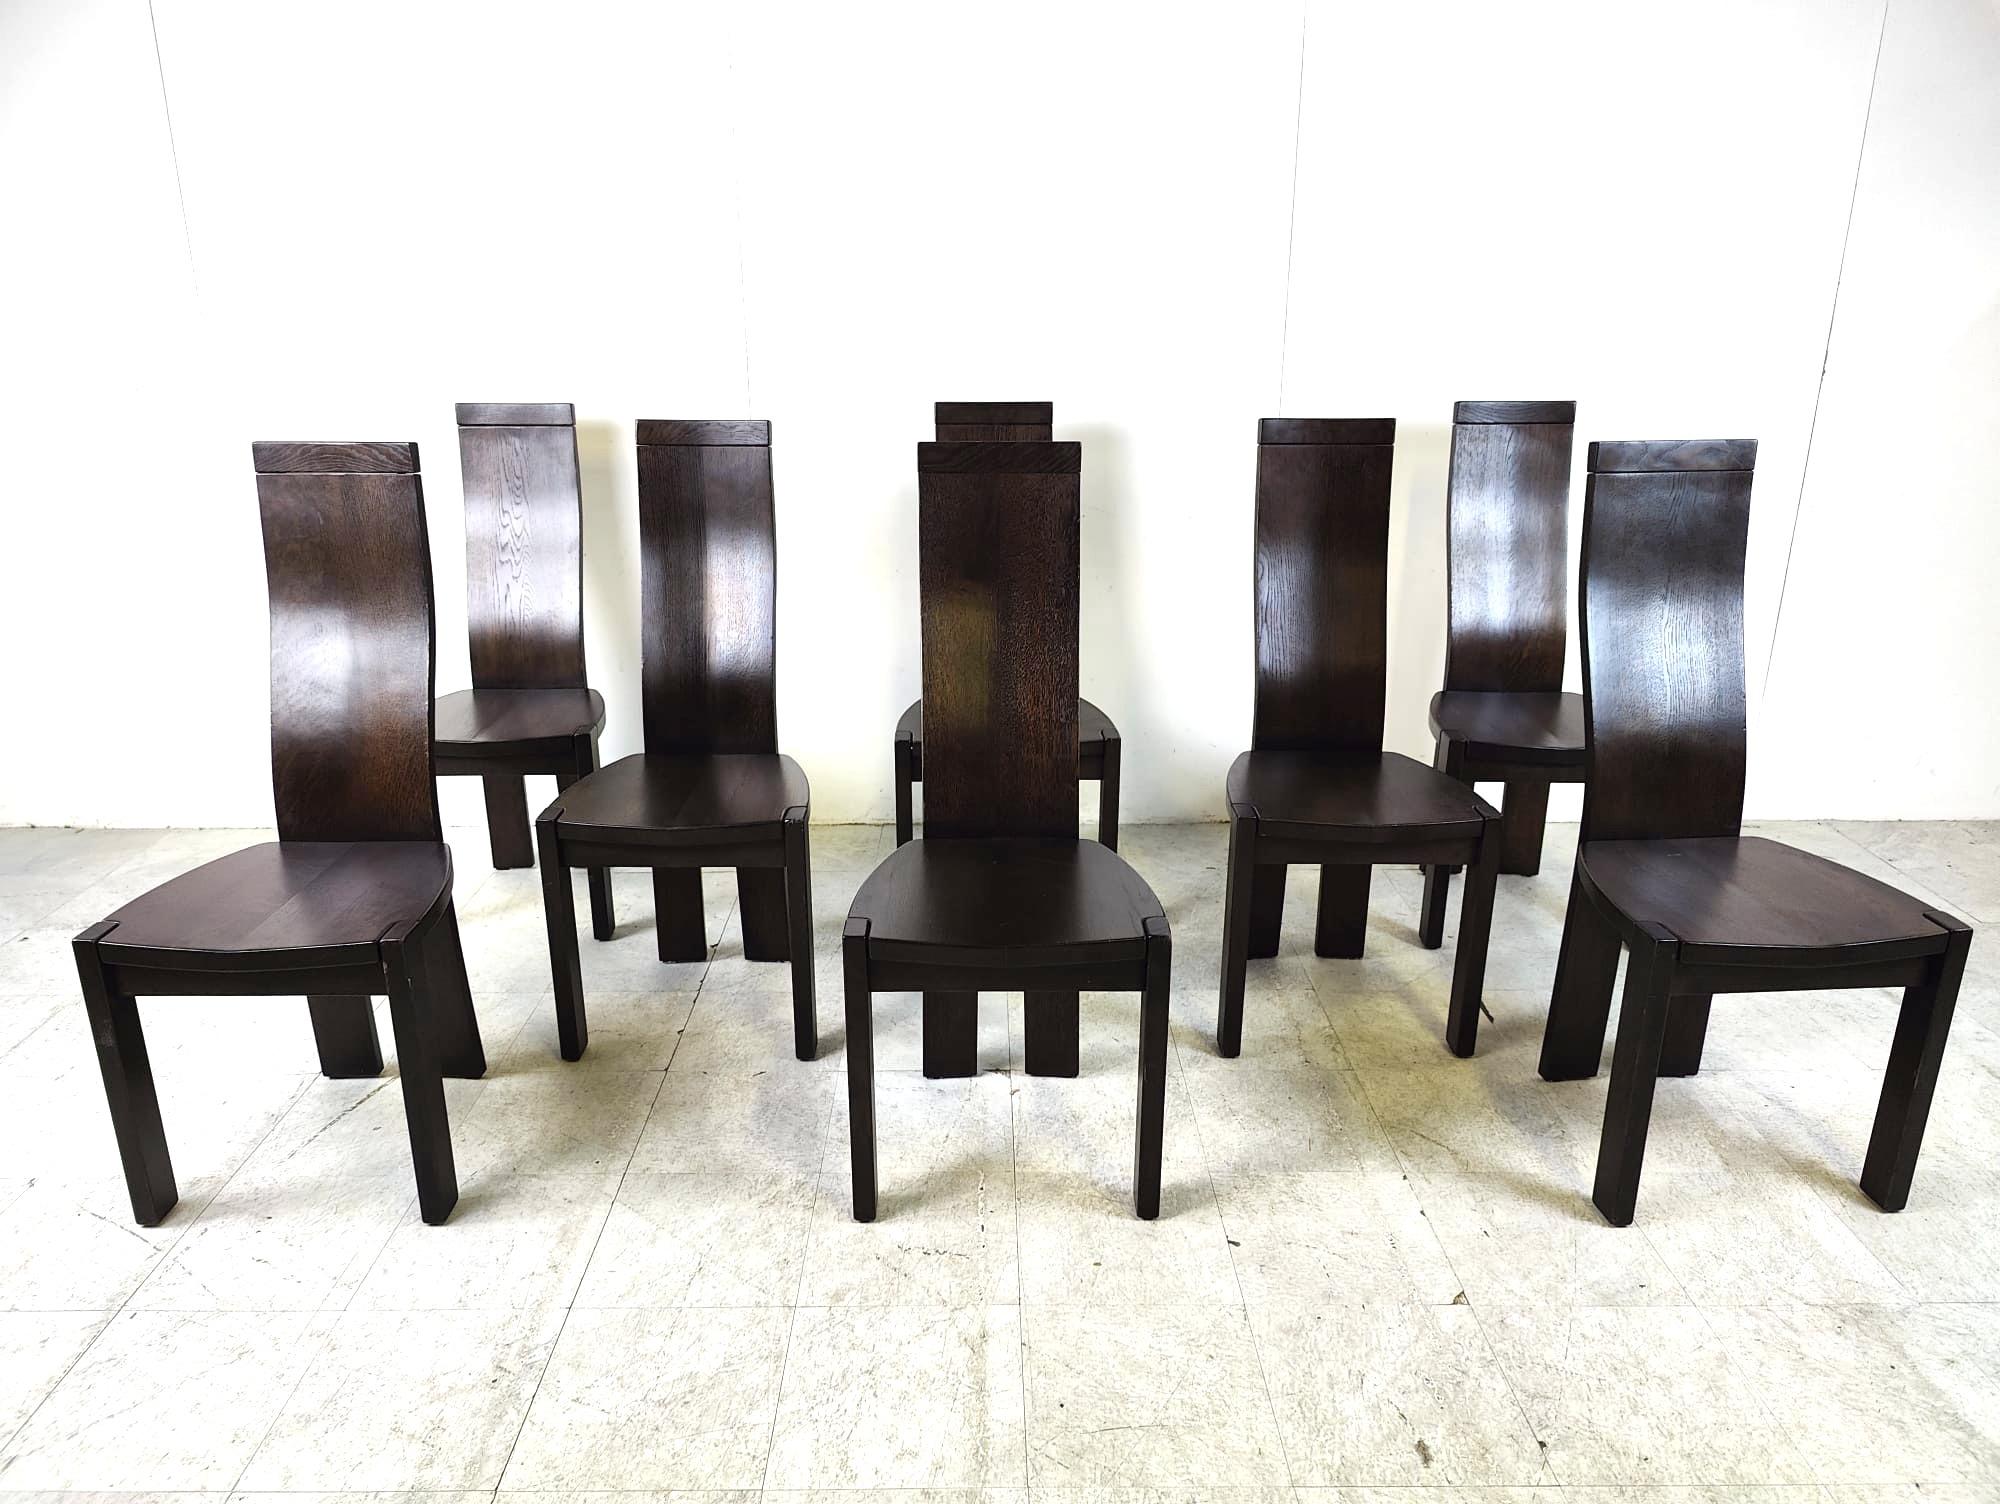 Chaises de salle à manger élégantes et sculpturales à haut dossier de Vanden Berghe Pauvers.

Les chaises sont en bon état général.

Années 1980 - Belgique

Dimensions :
Hauteur : 108cm/42.51